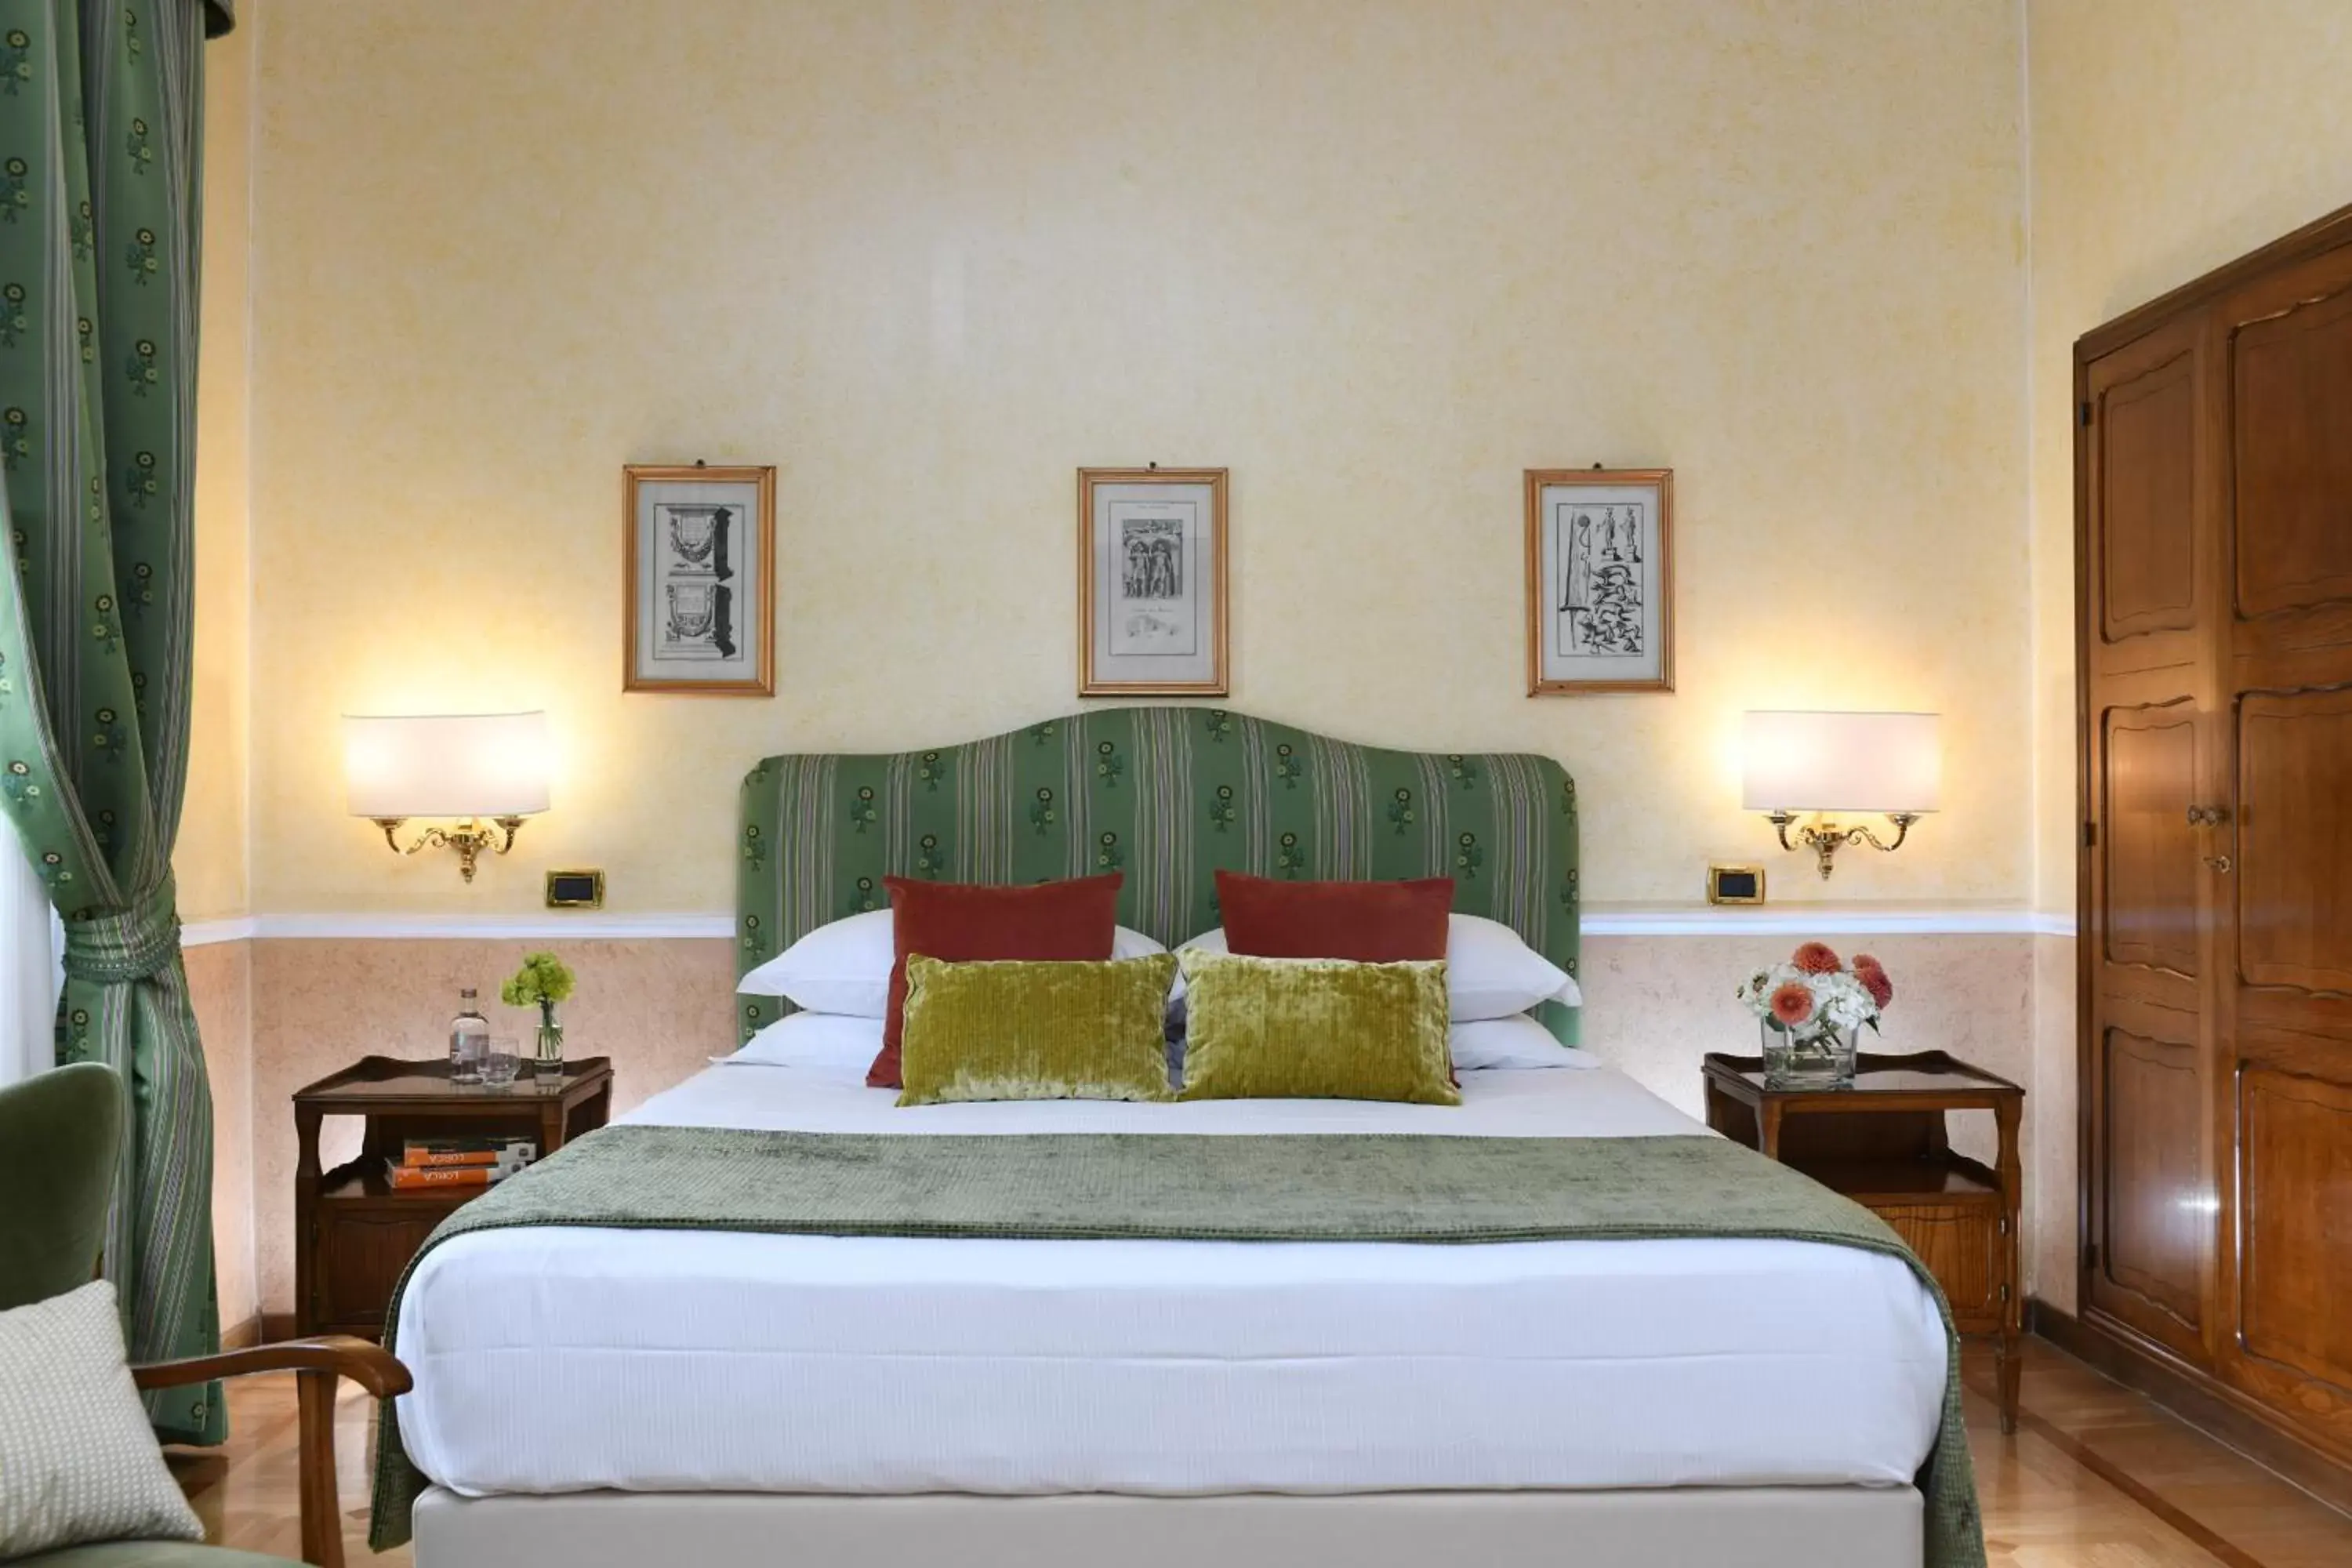 Bed in Bettoja Hotel Massimo d'Azeglio